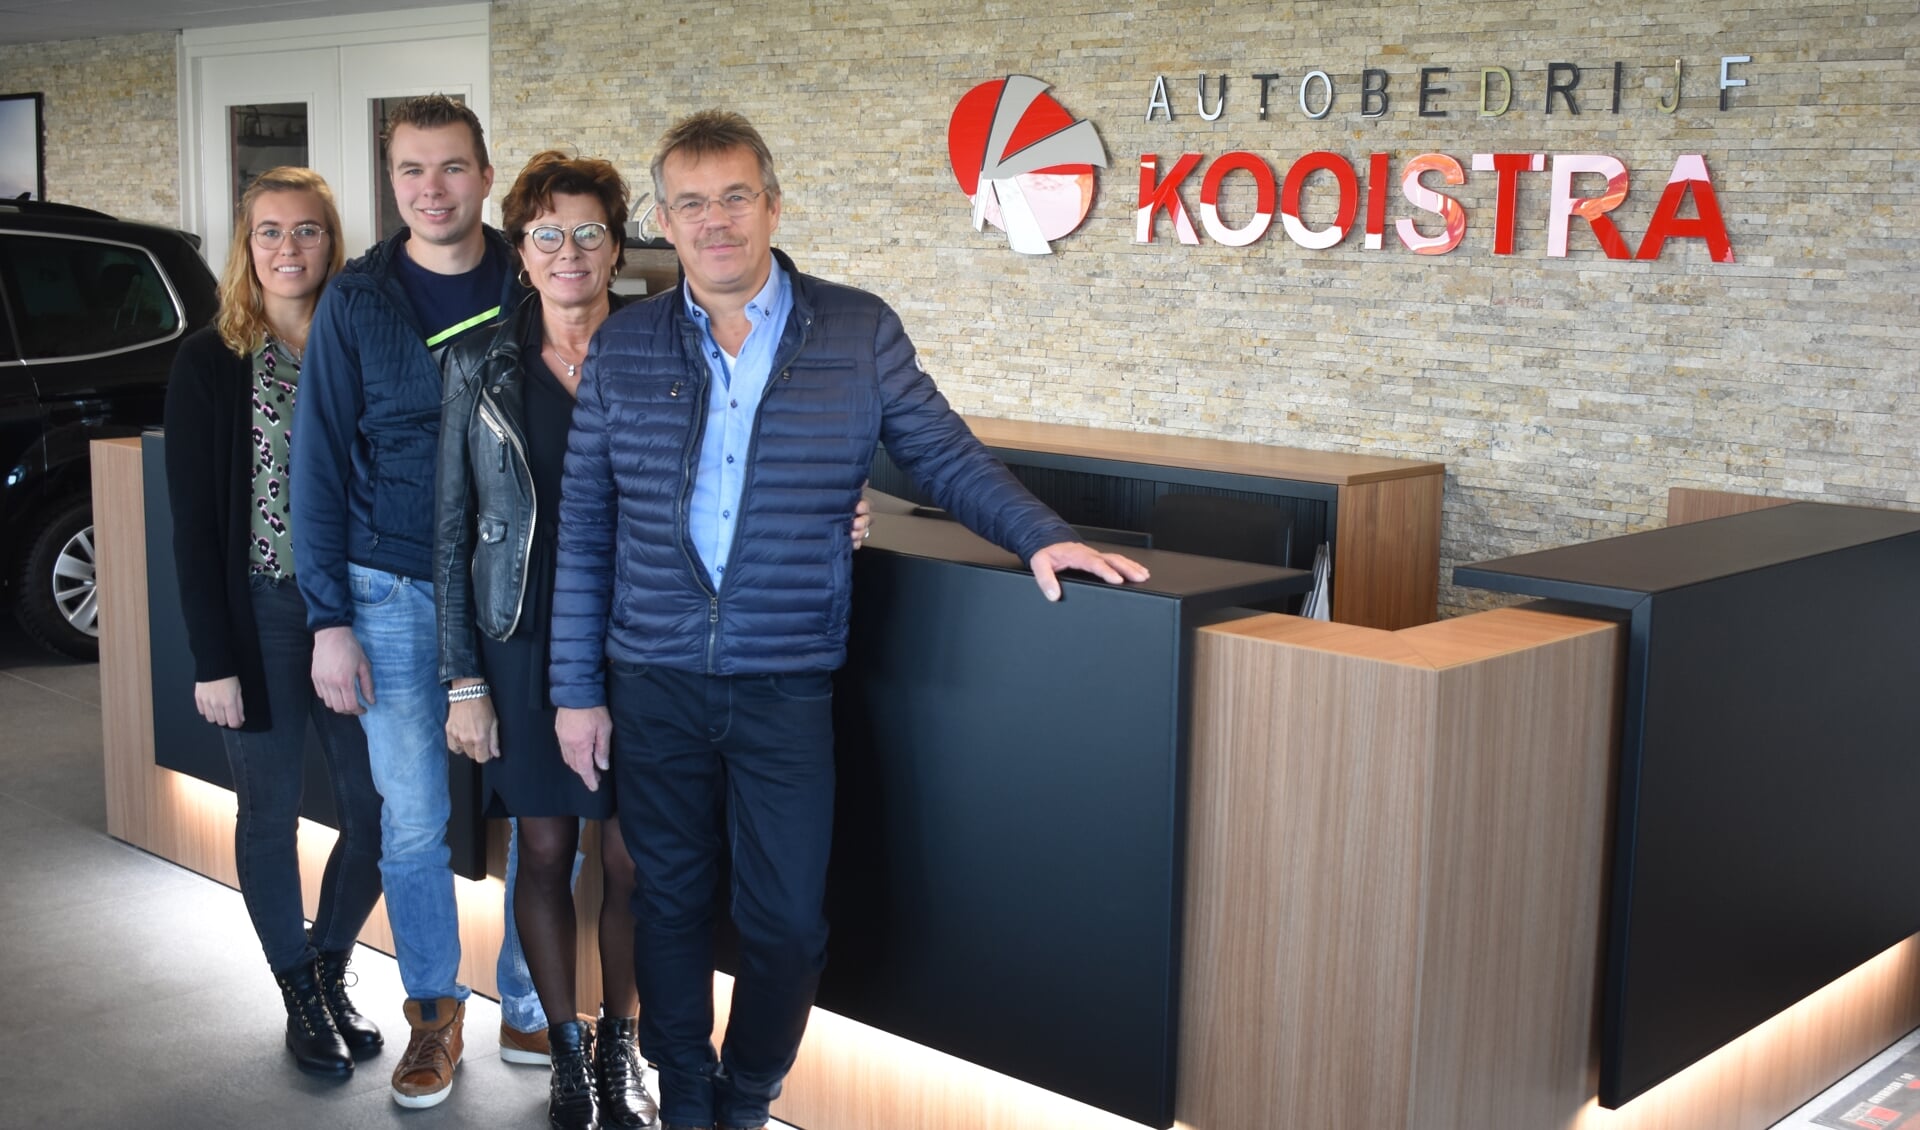 Autobedrijf Kooistra is een echt familiebedrijf. Van links naar rechts: Fennie, Denian, Anita en Anne Kooistra. 